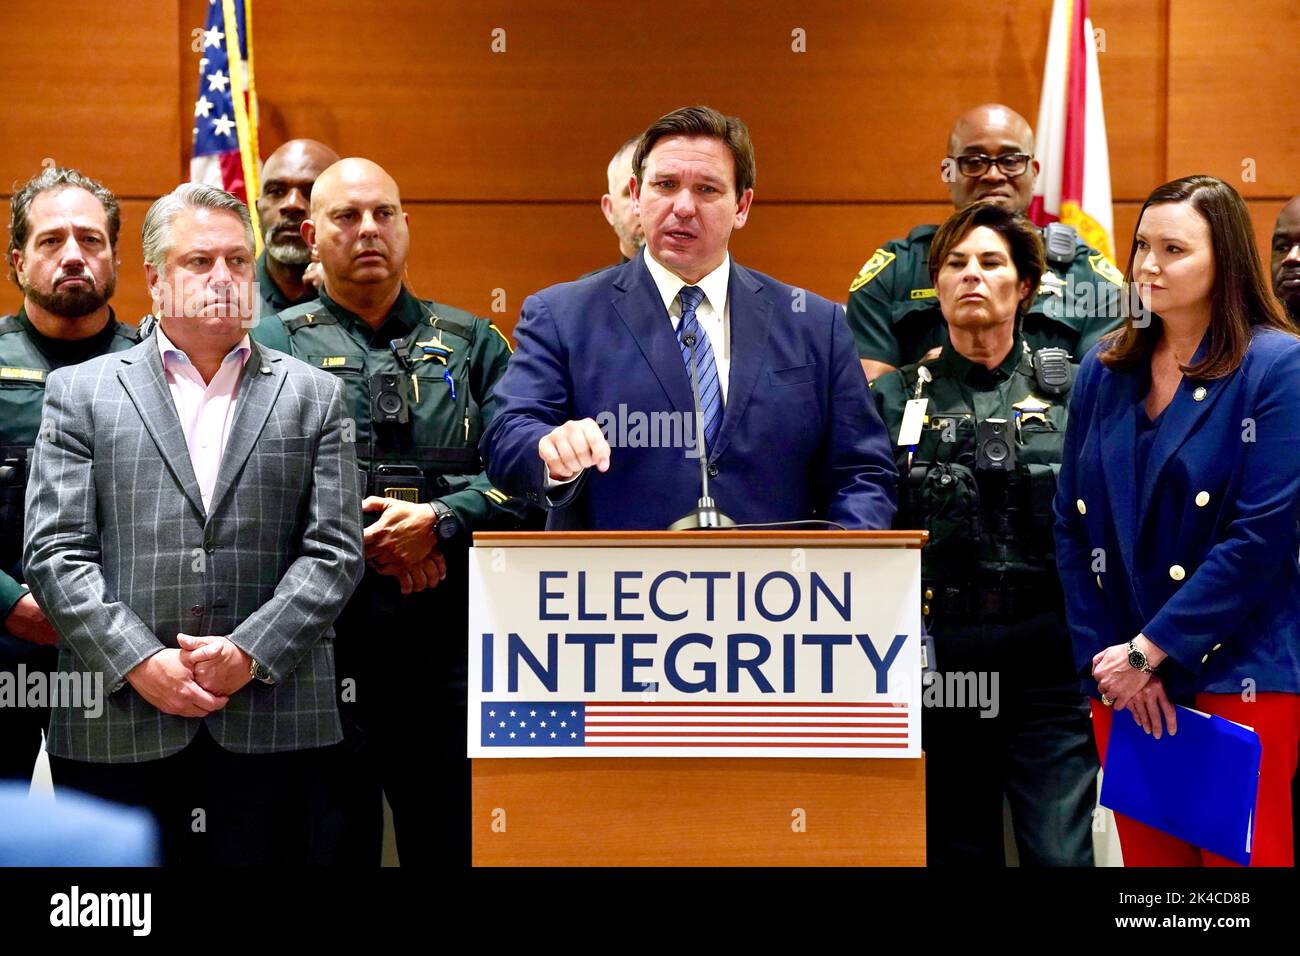 El Gobernador de Florida Ron DeSantis, hablando en una conferencia de prensa en el Tribunal del Condado de Broward el 18 de agosto de 2022, tratando el arresto de 20 ex-criminales por fraude electoral vinculado a las elecciones de 2020. (ESTADOS UNIDOS) Foto de stock